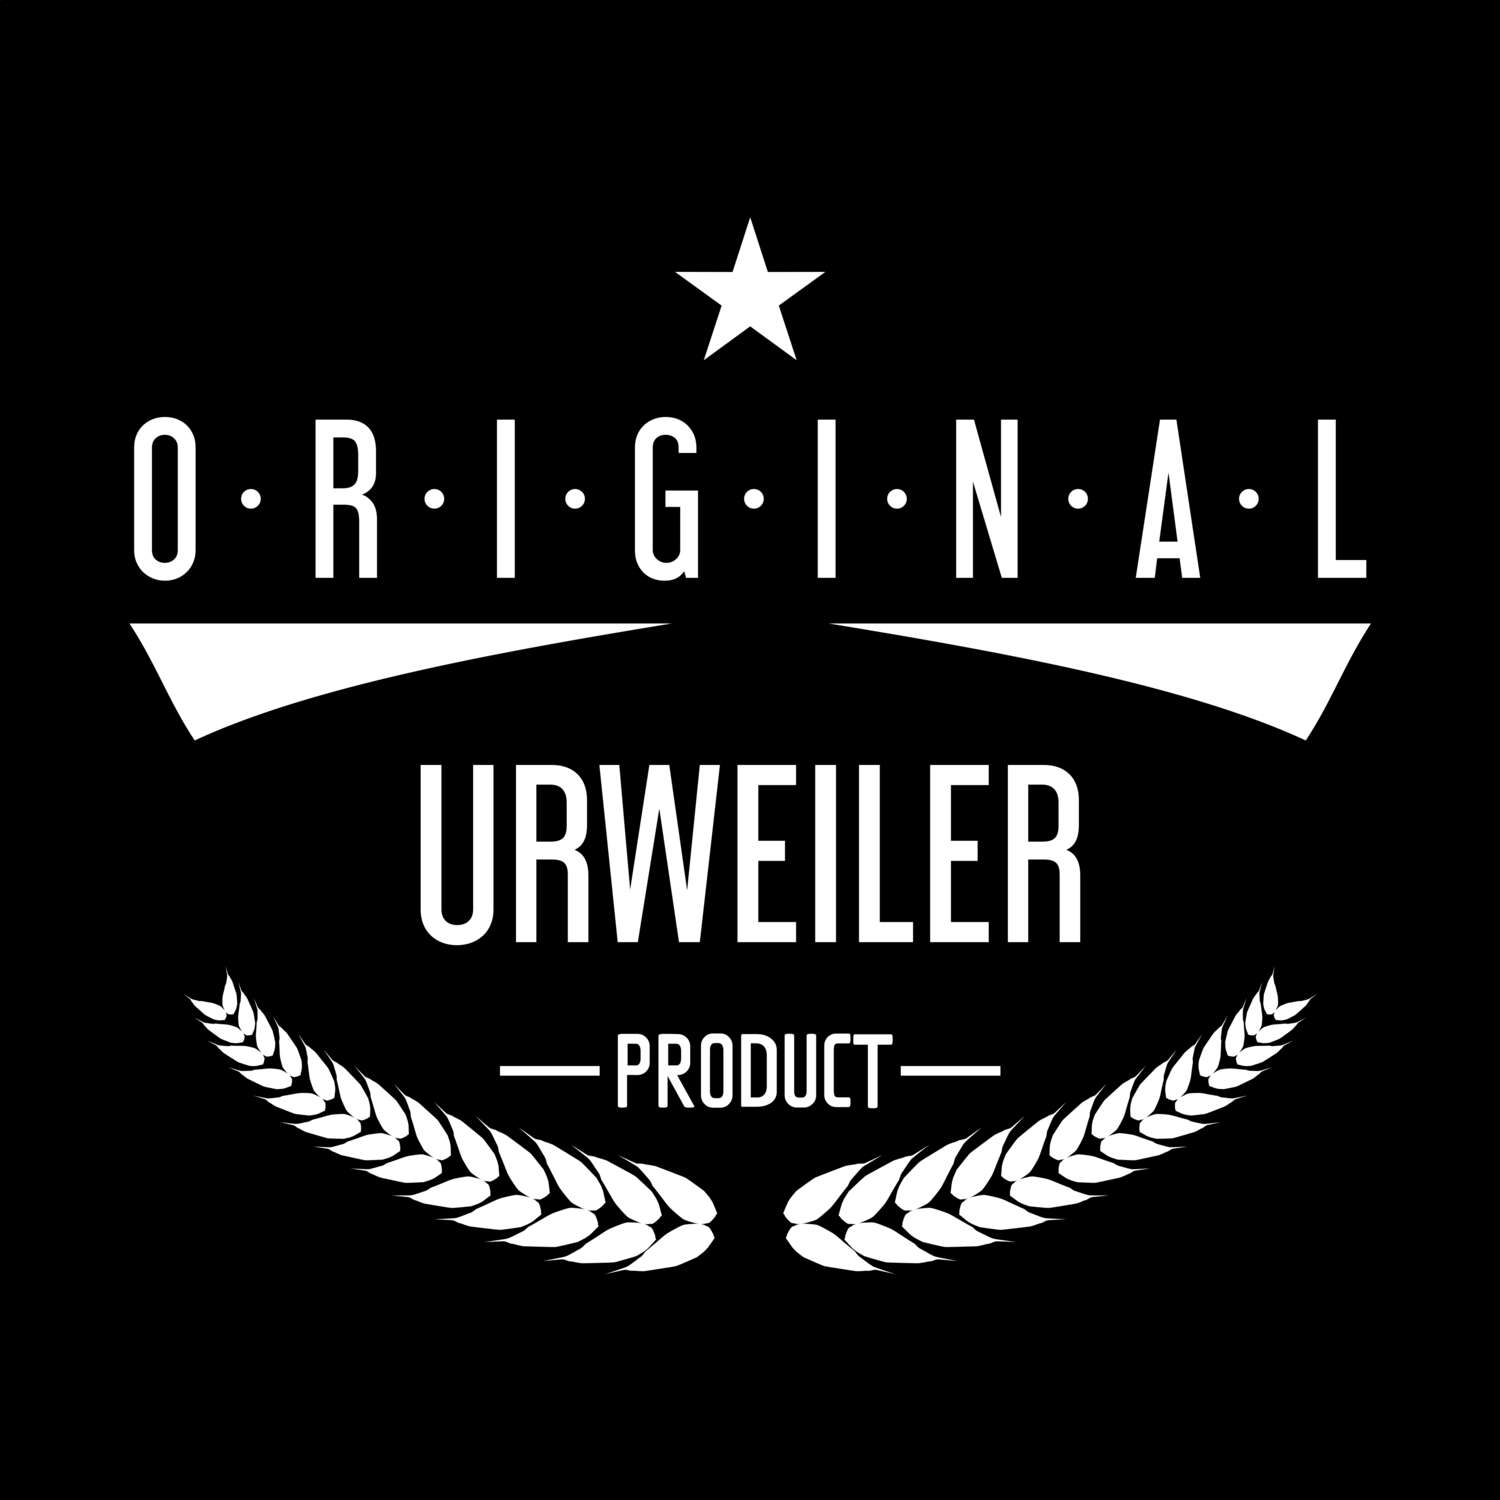 Urweiler T-Shirt »Original Product«